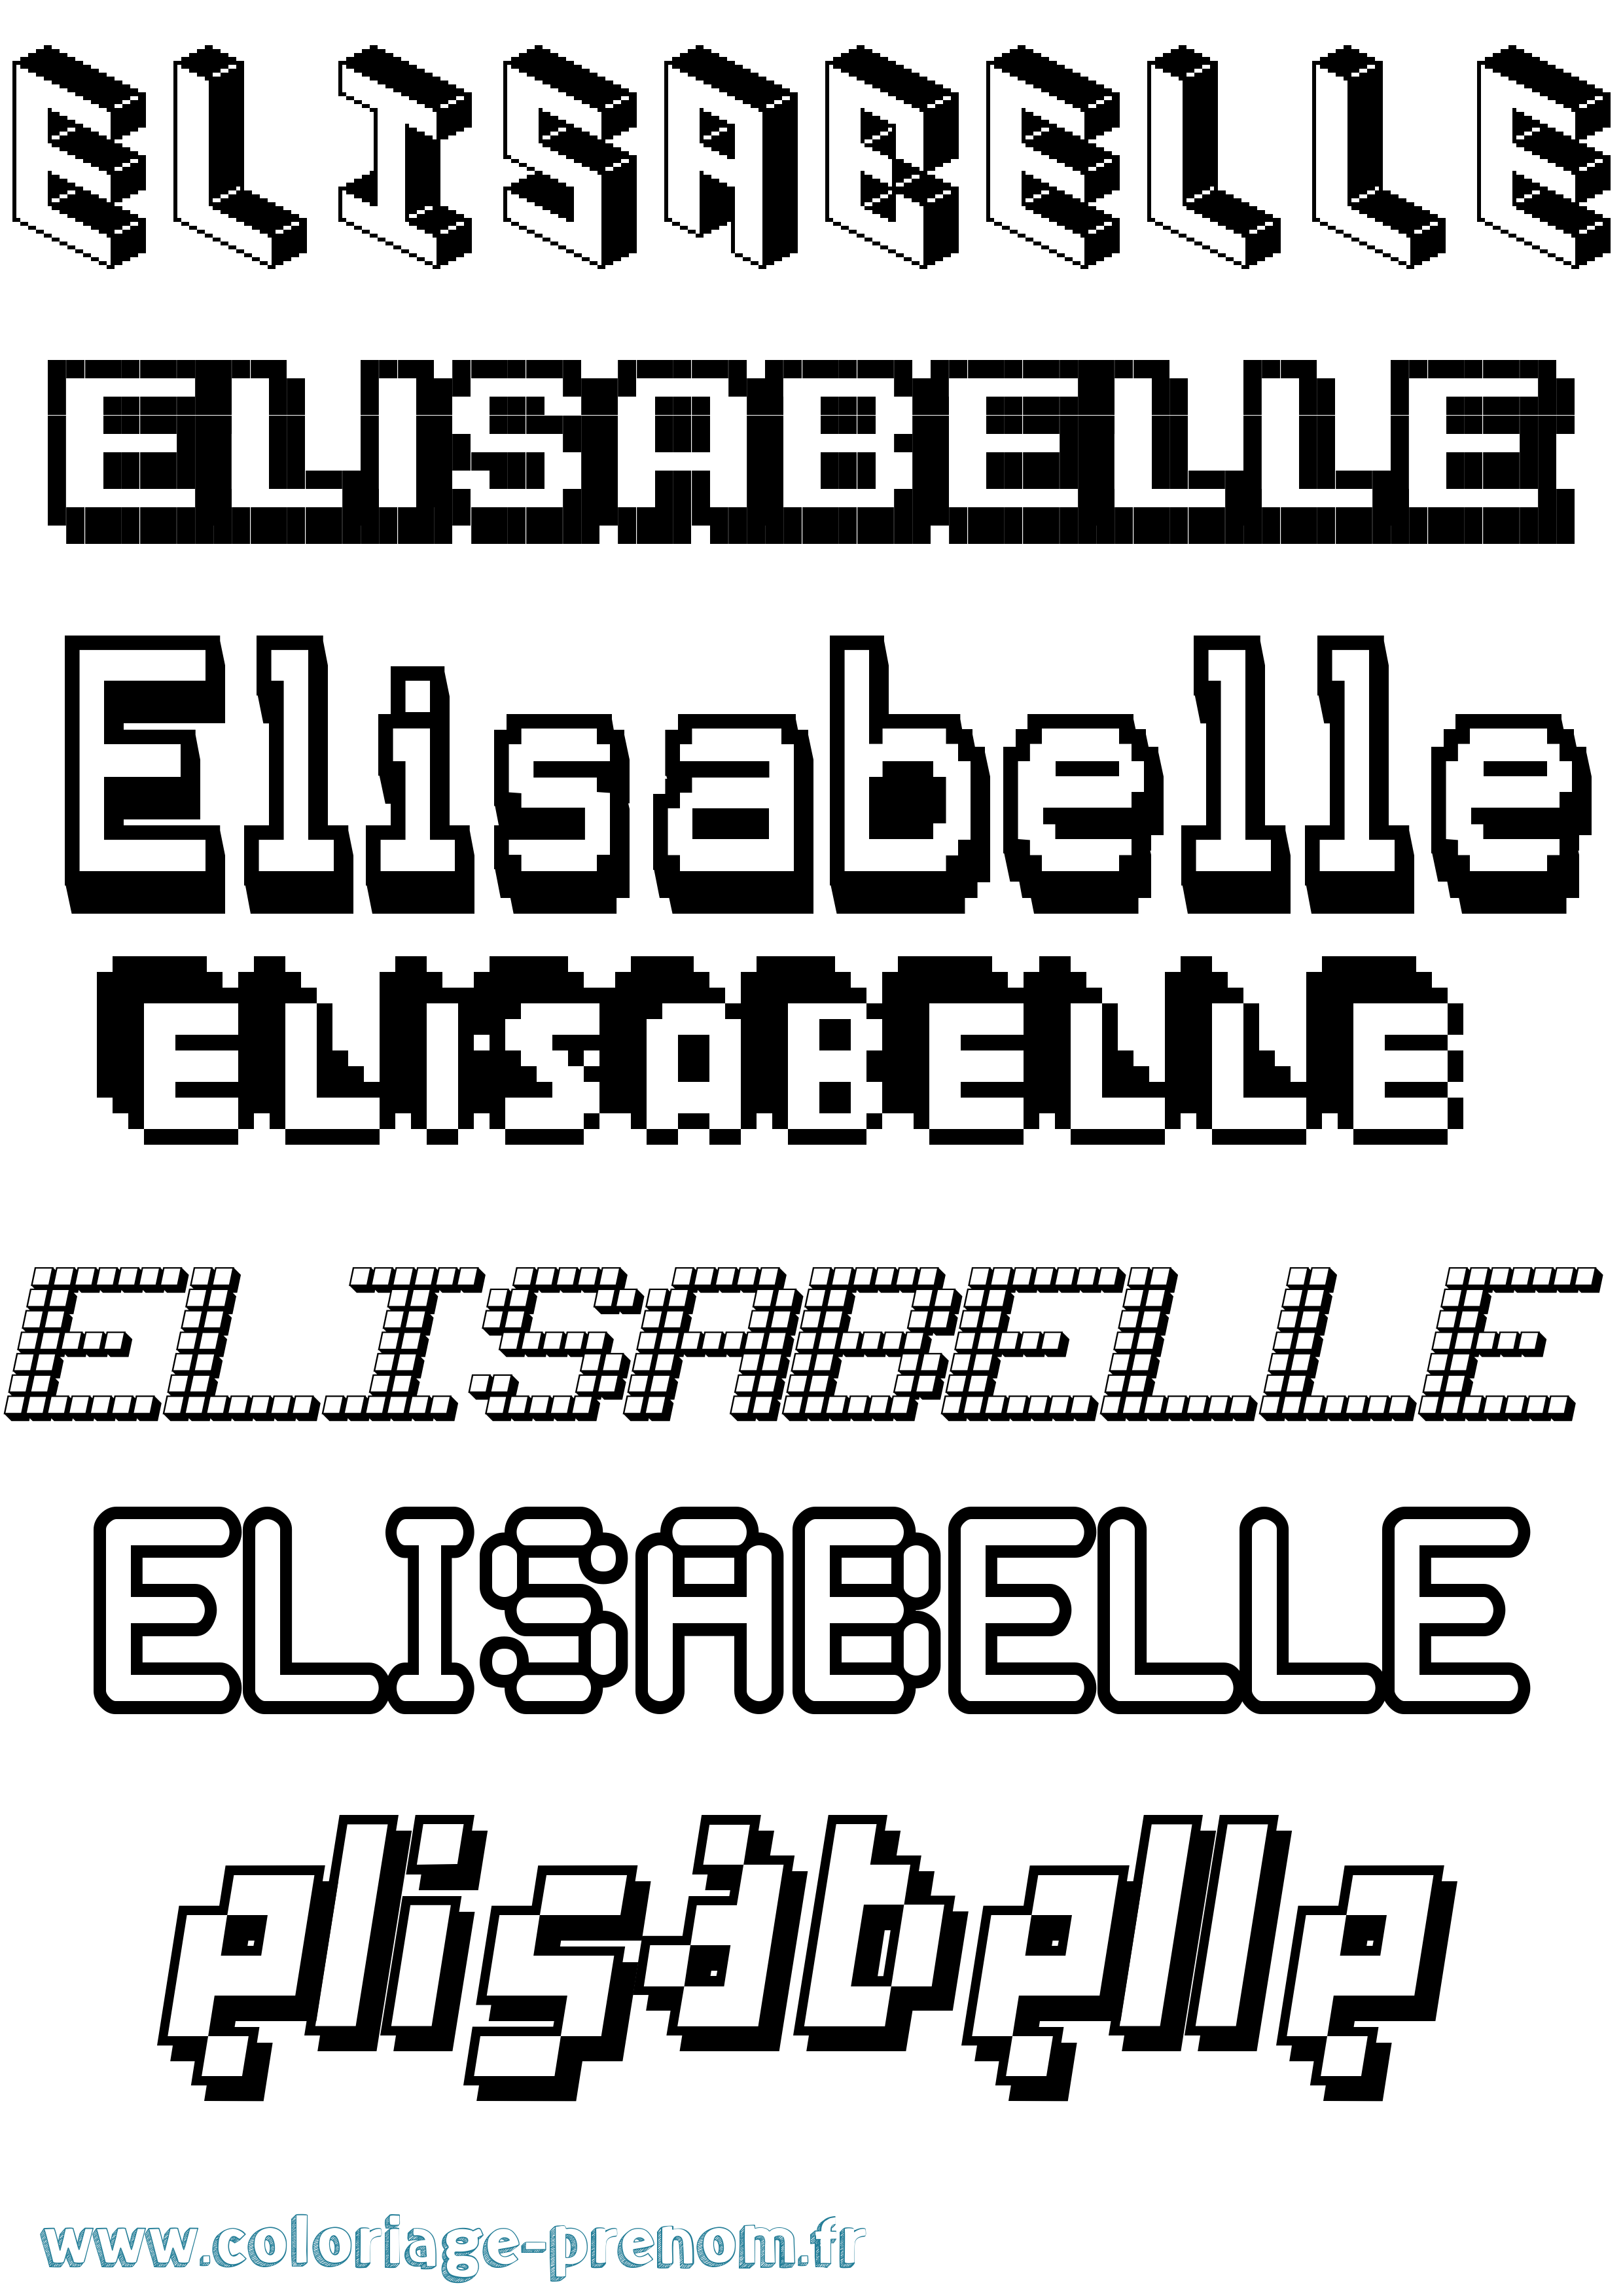 Coloriage prénom Elisabelle Pixel